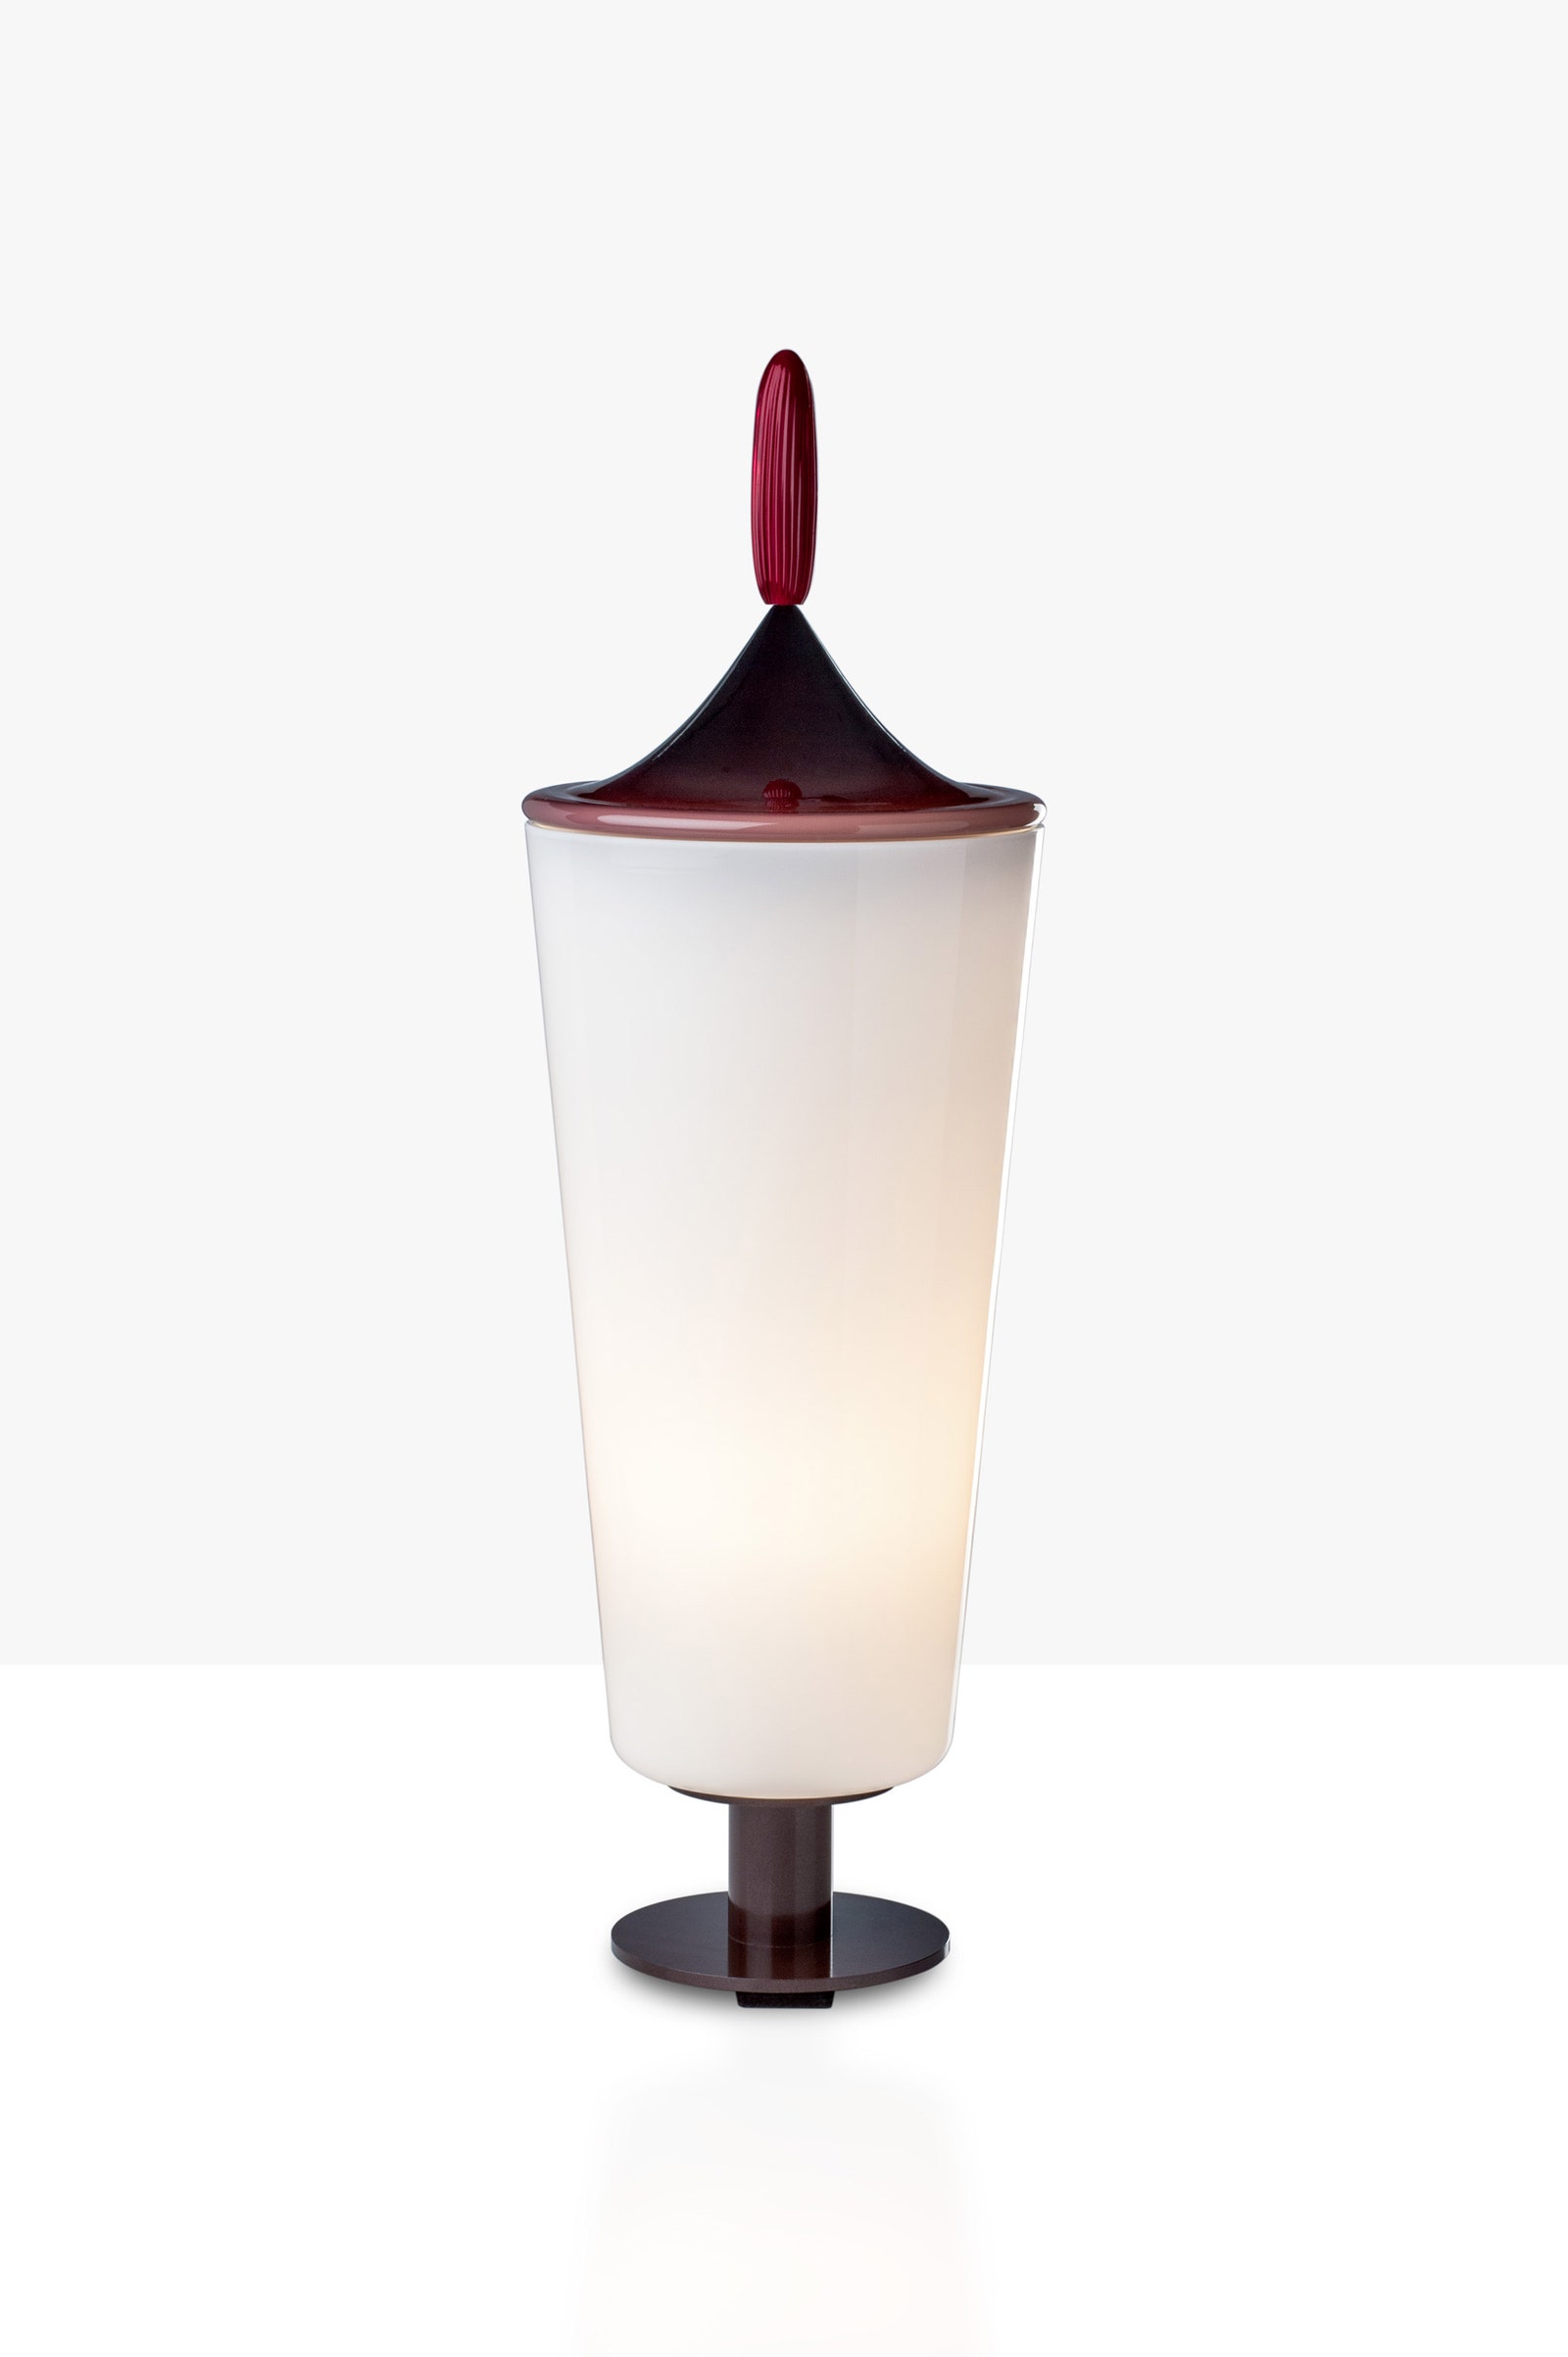 Этот смутный объект желания светильники из коллекции Lou от Альдо Чибича